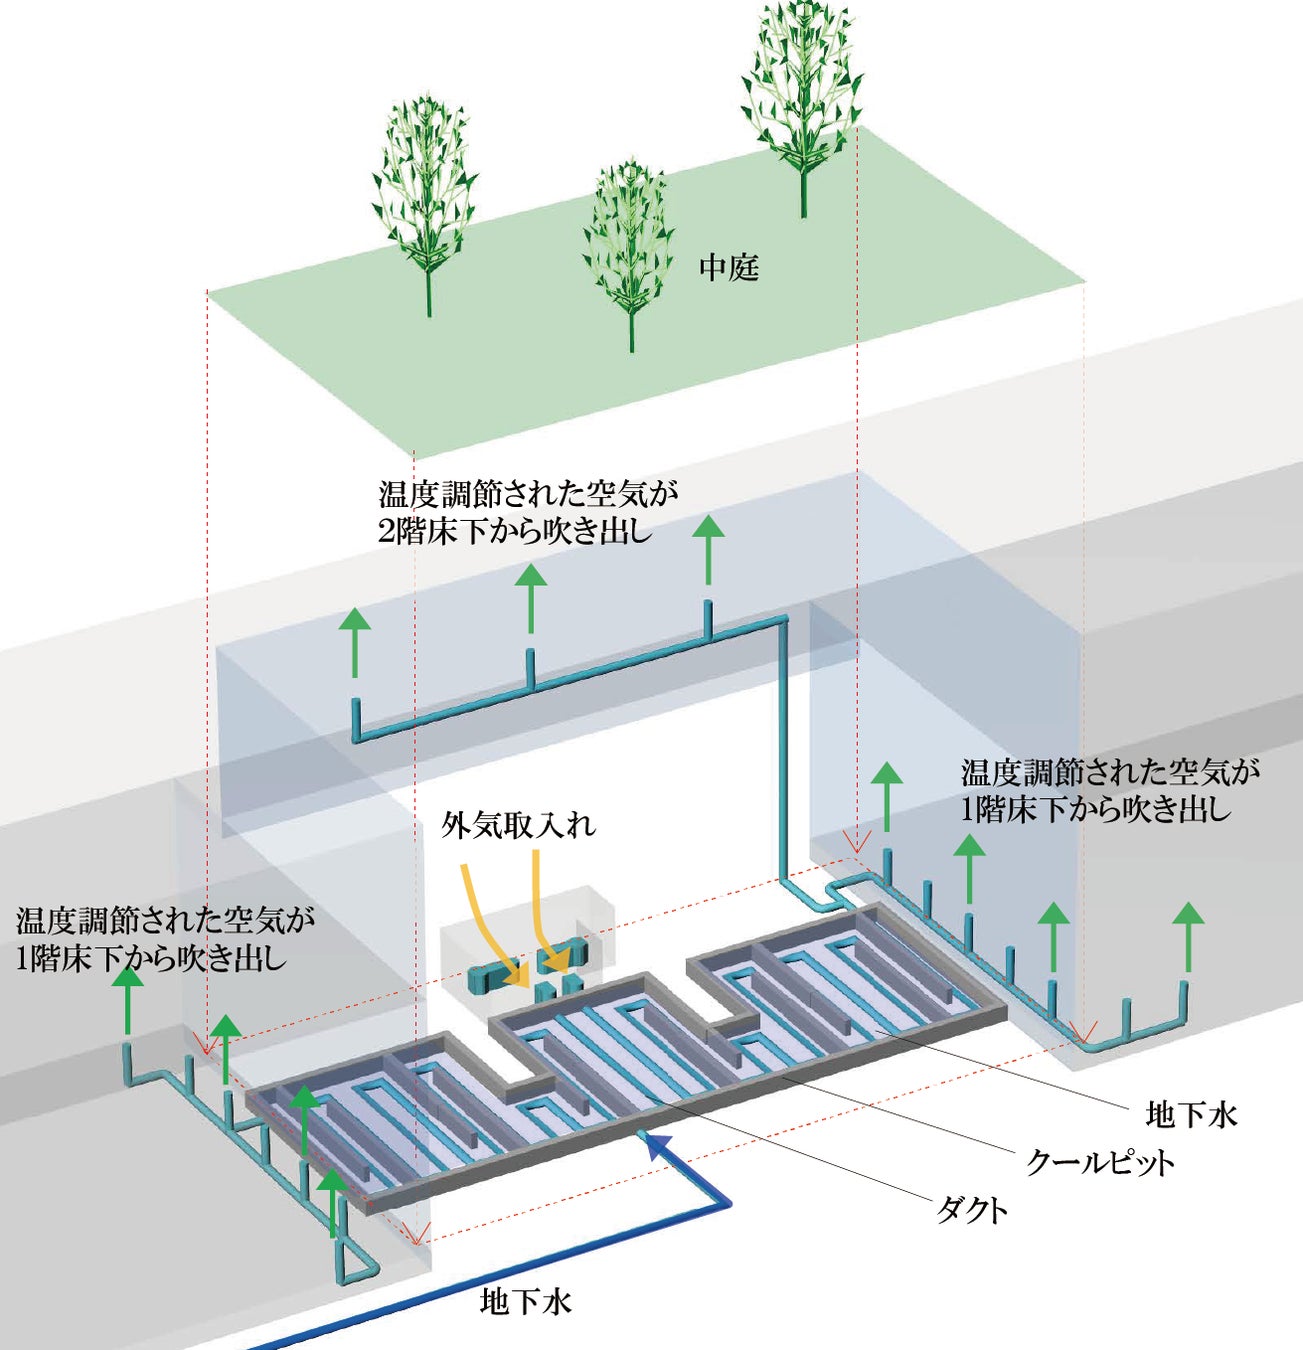 「日本の伝統智」を活かしたサステナブルオフィスが完成のサブ画像7_中庭下のクールピットに地下水を流し、そこへ設置したダクト内に外気を通して地下水と熱交換を行い、温度調節された空気を室内に送り込む自然換気のシステム。３２℃の外気は、約１８℃の地下水により２５℃程度まで下がる。